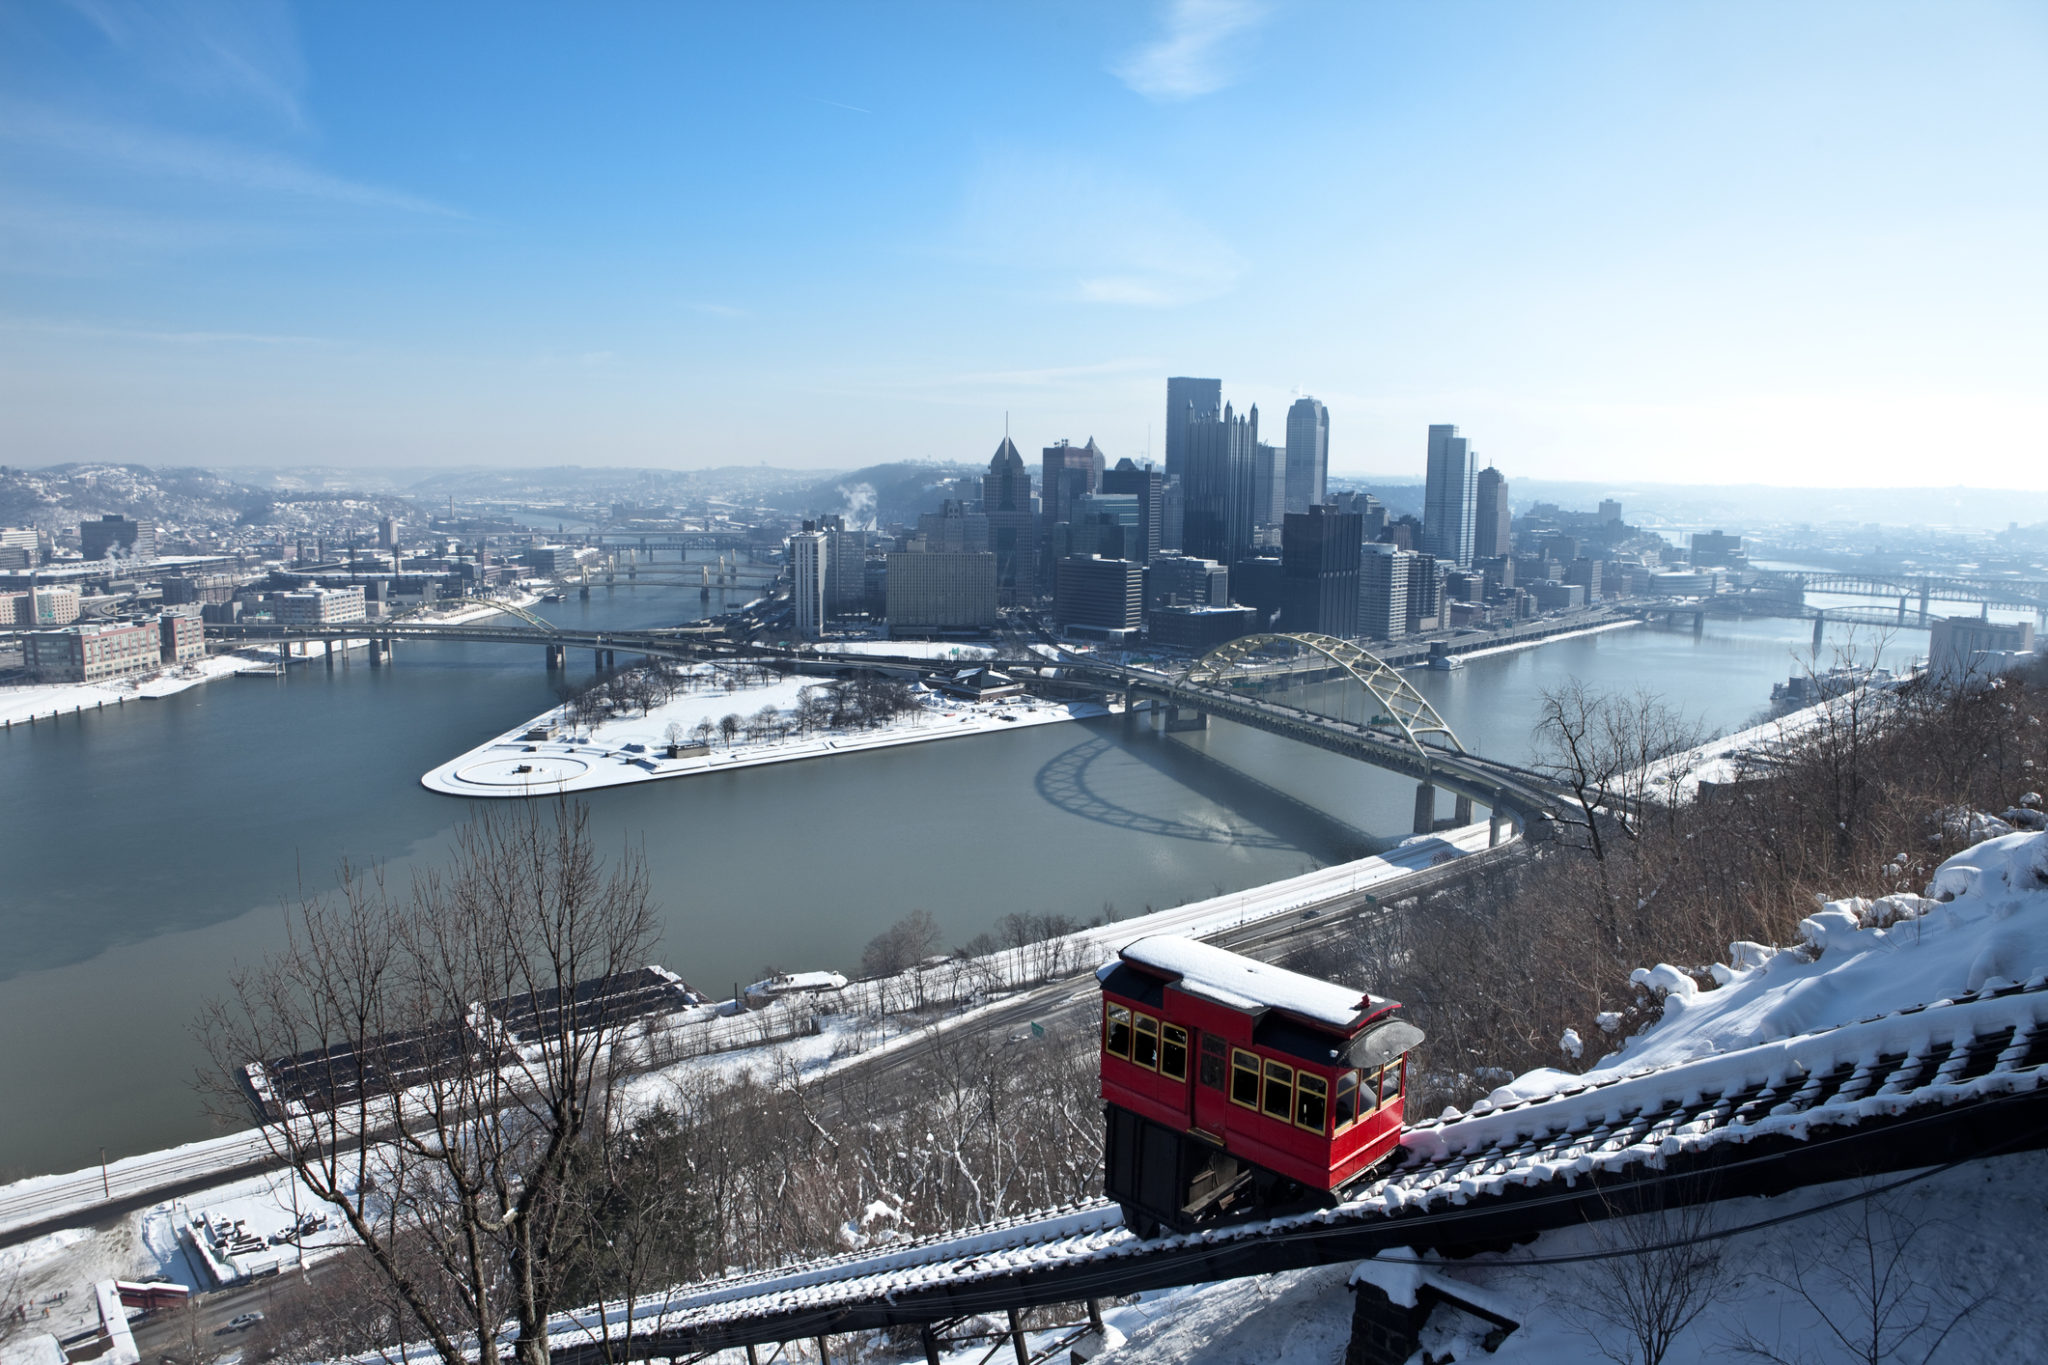 Warm, Winter Activities in Pittsburgh